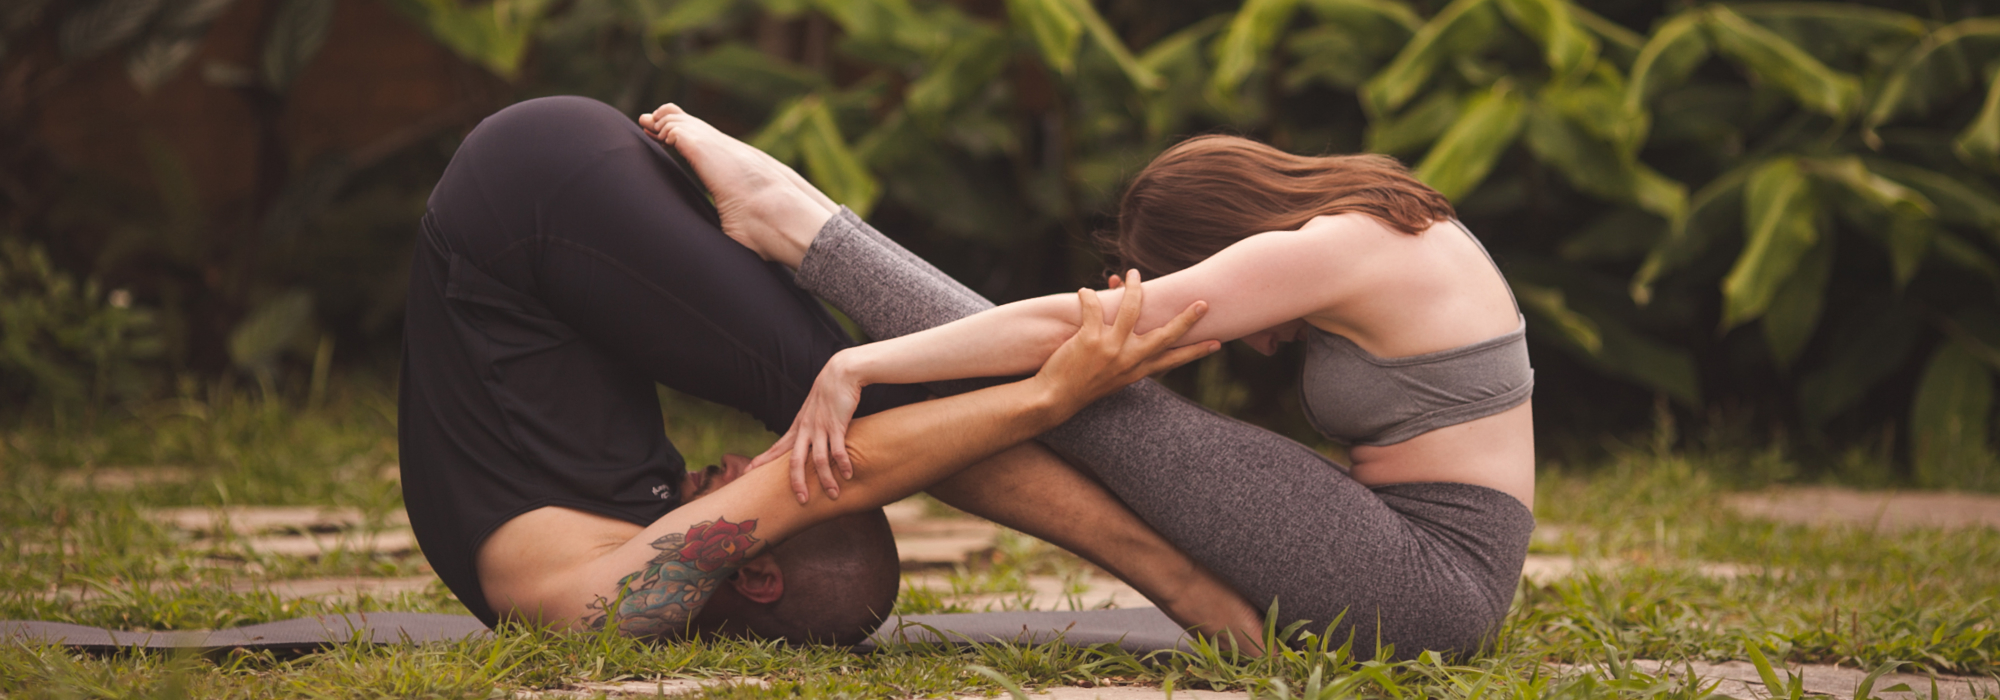 Yoga, consciência e natureza: uma relação transformadora